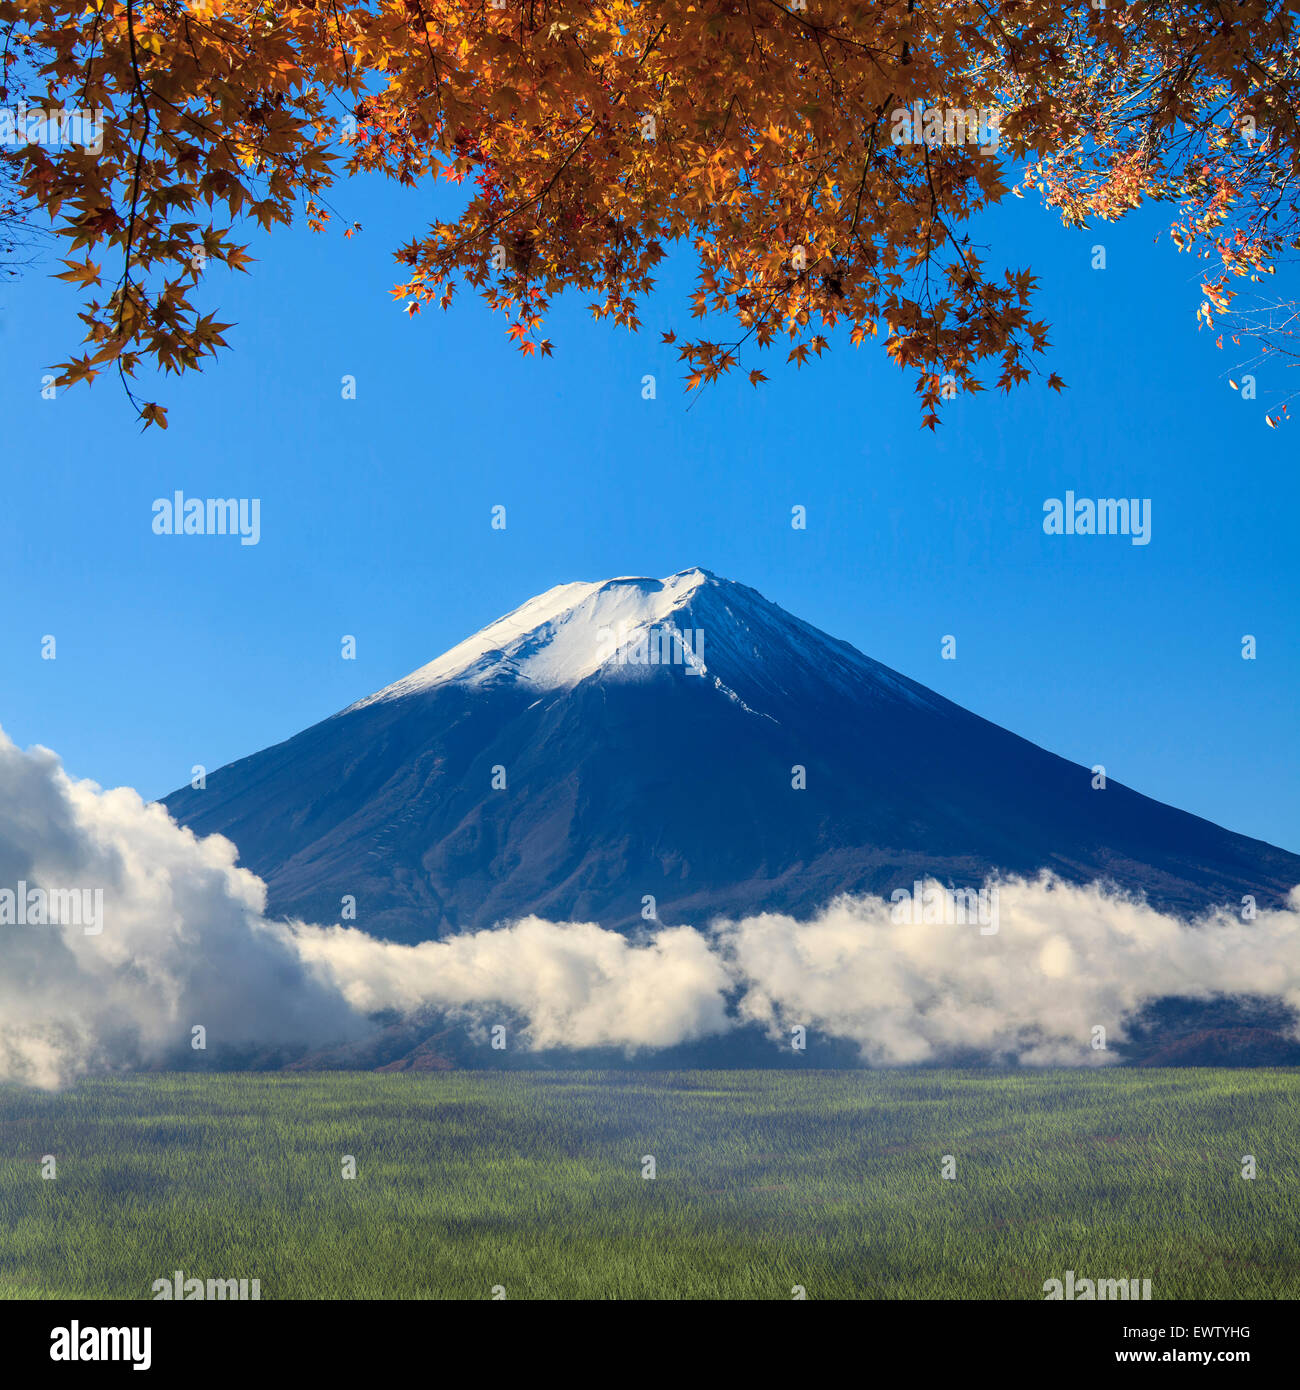 Immagine della montagna sacra di Fuji in background in Giappone per adv o altri usi Foto Stock